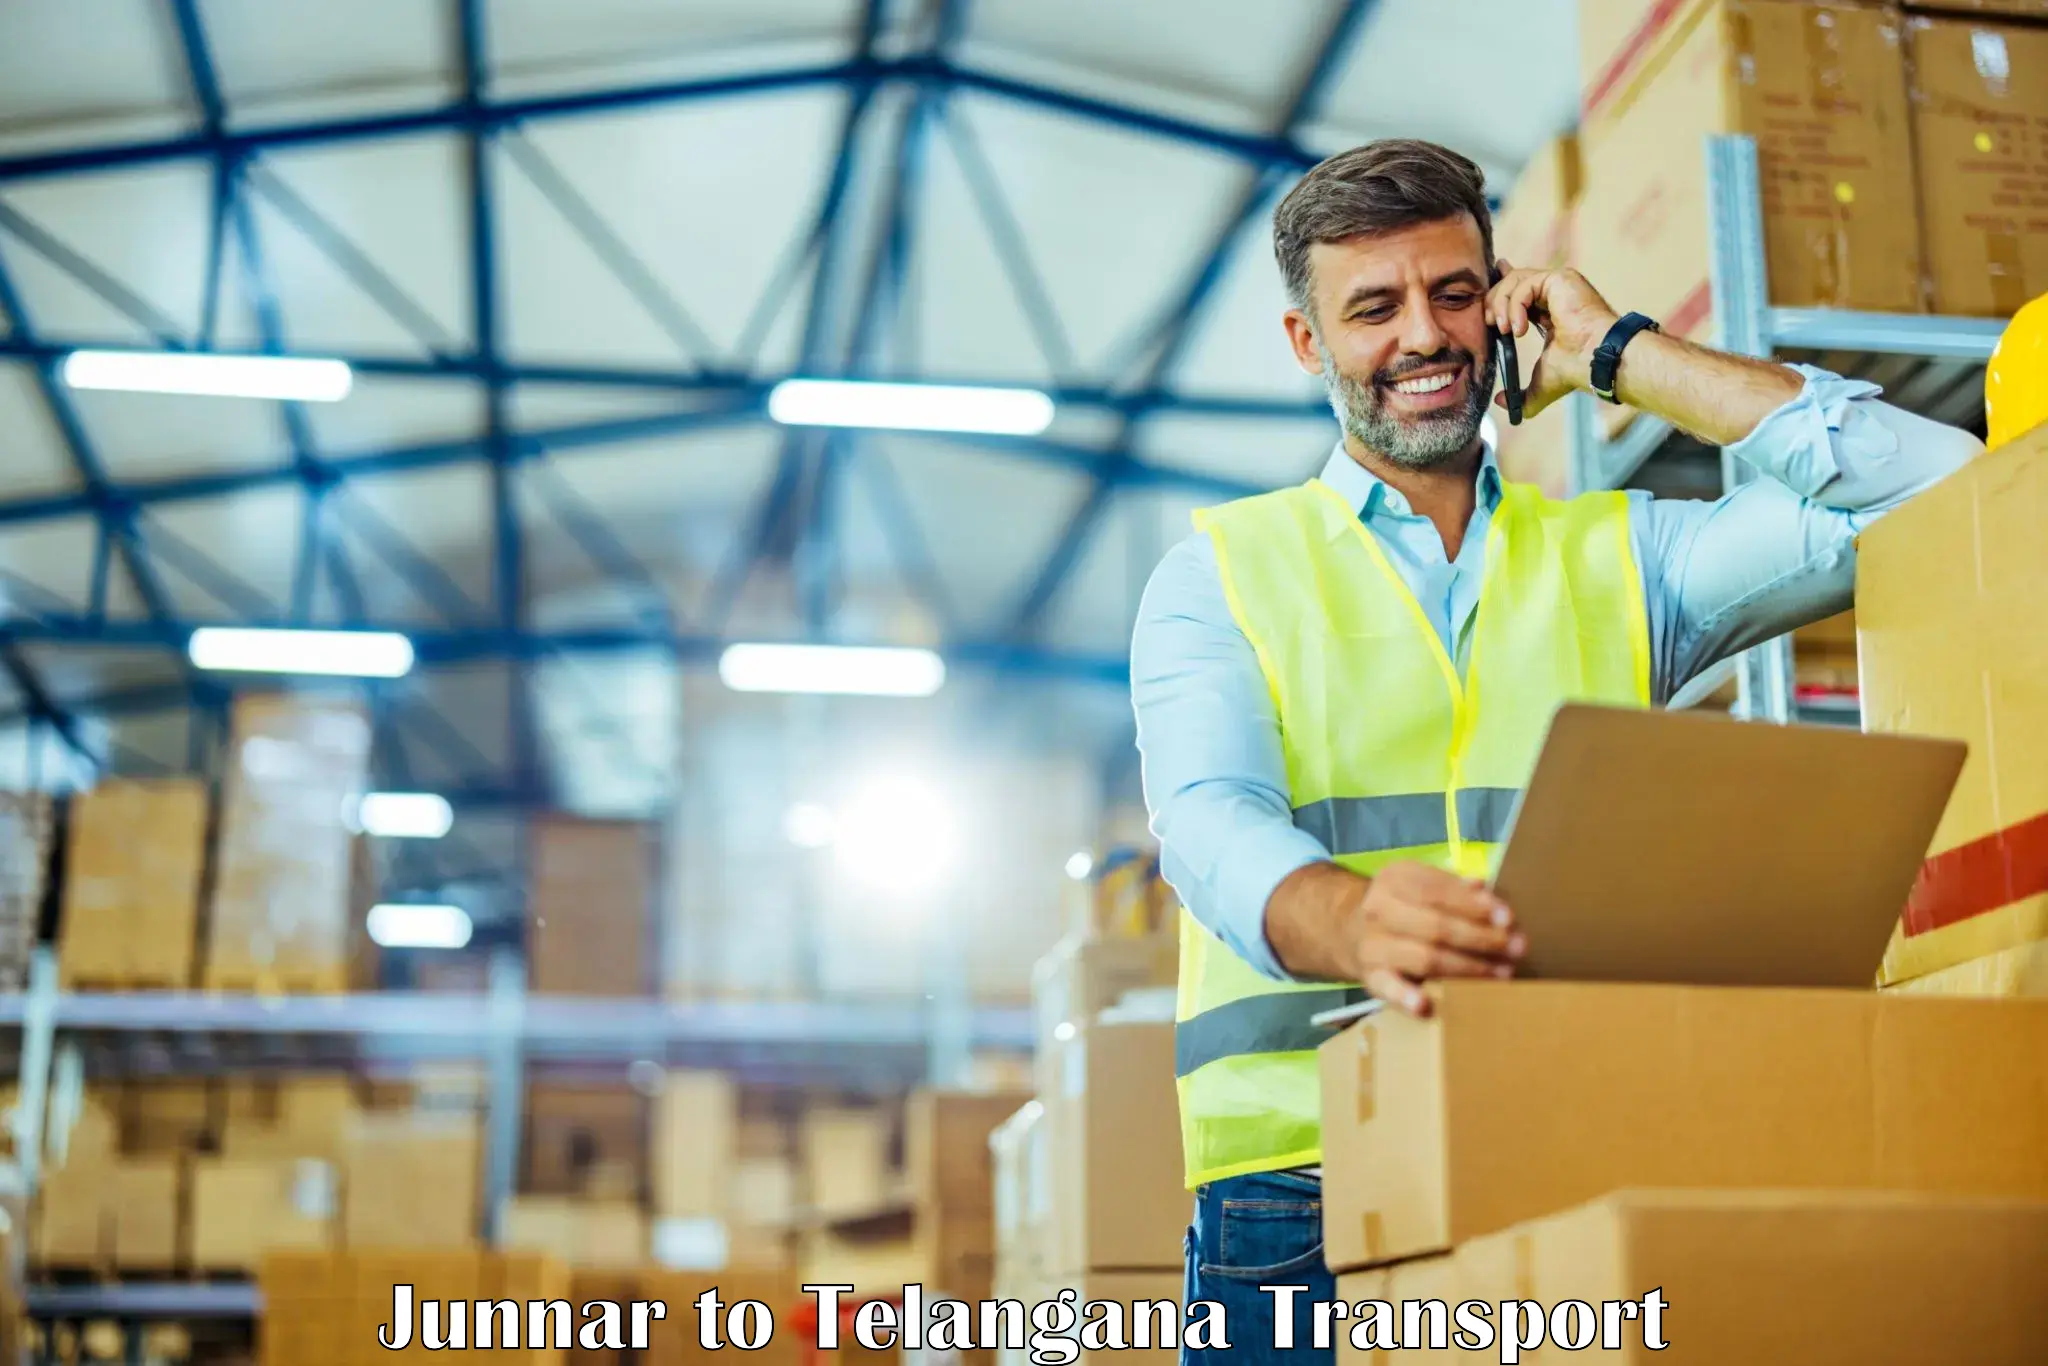 International cargo transportation services Junnar to Karimnagar